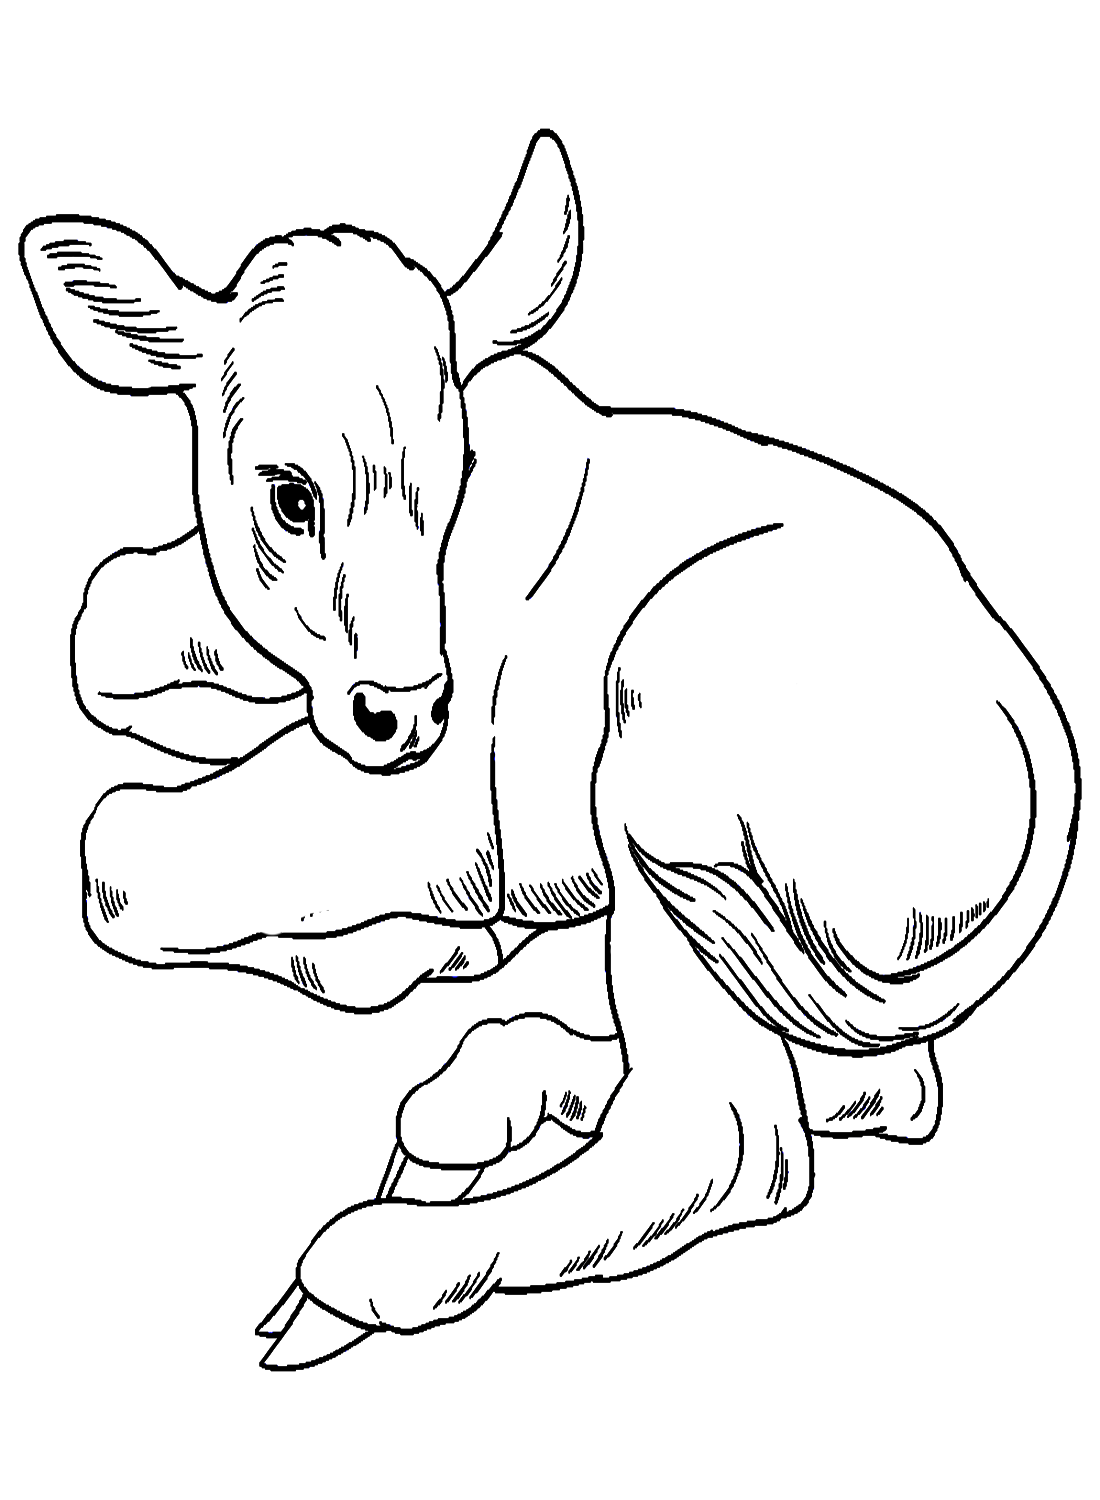 Ручной рисунок теленка, лежащего на земле от теленка